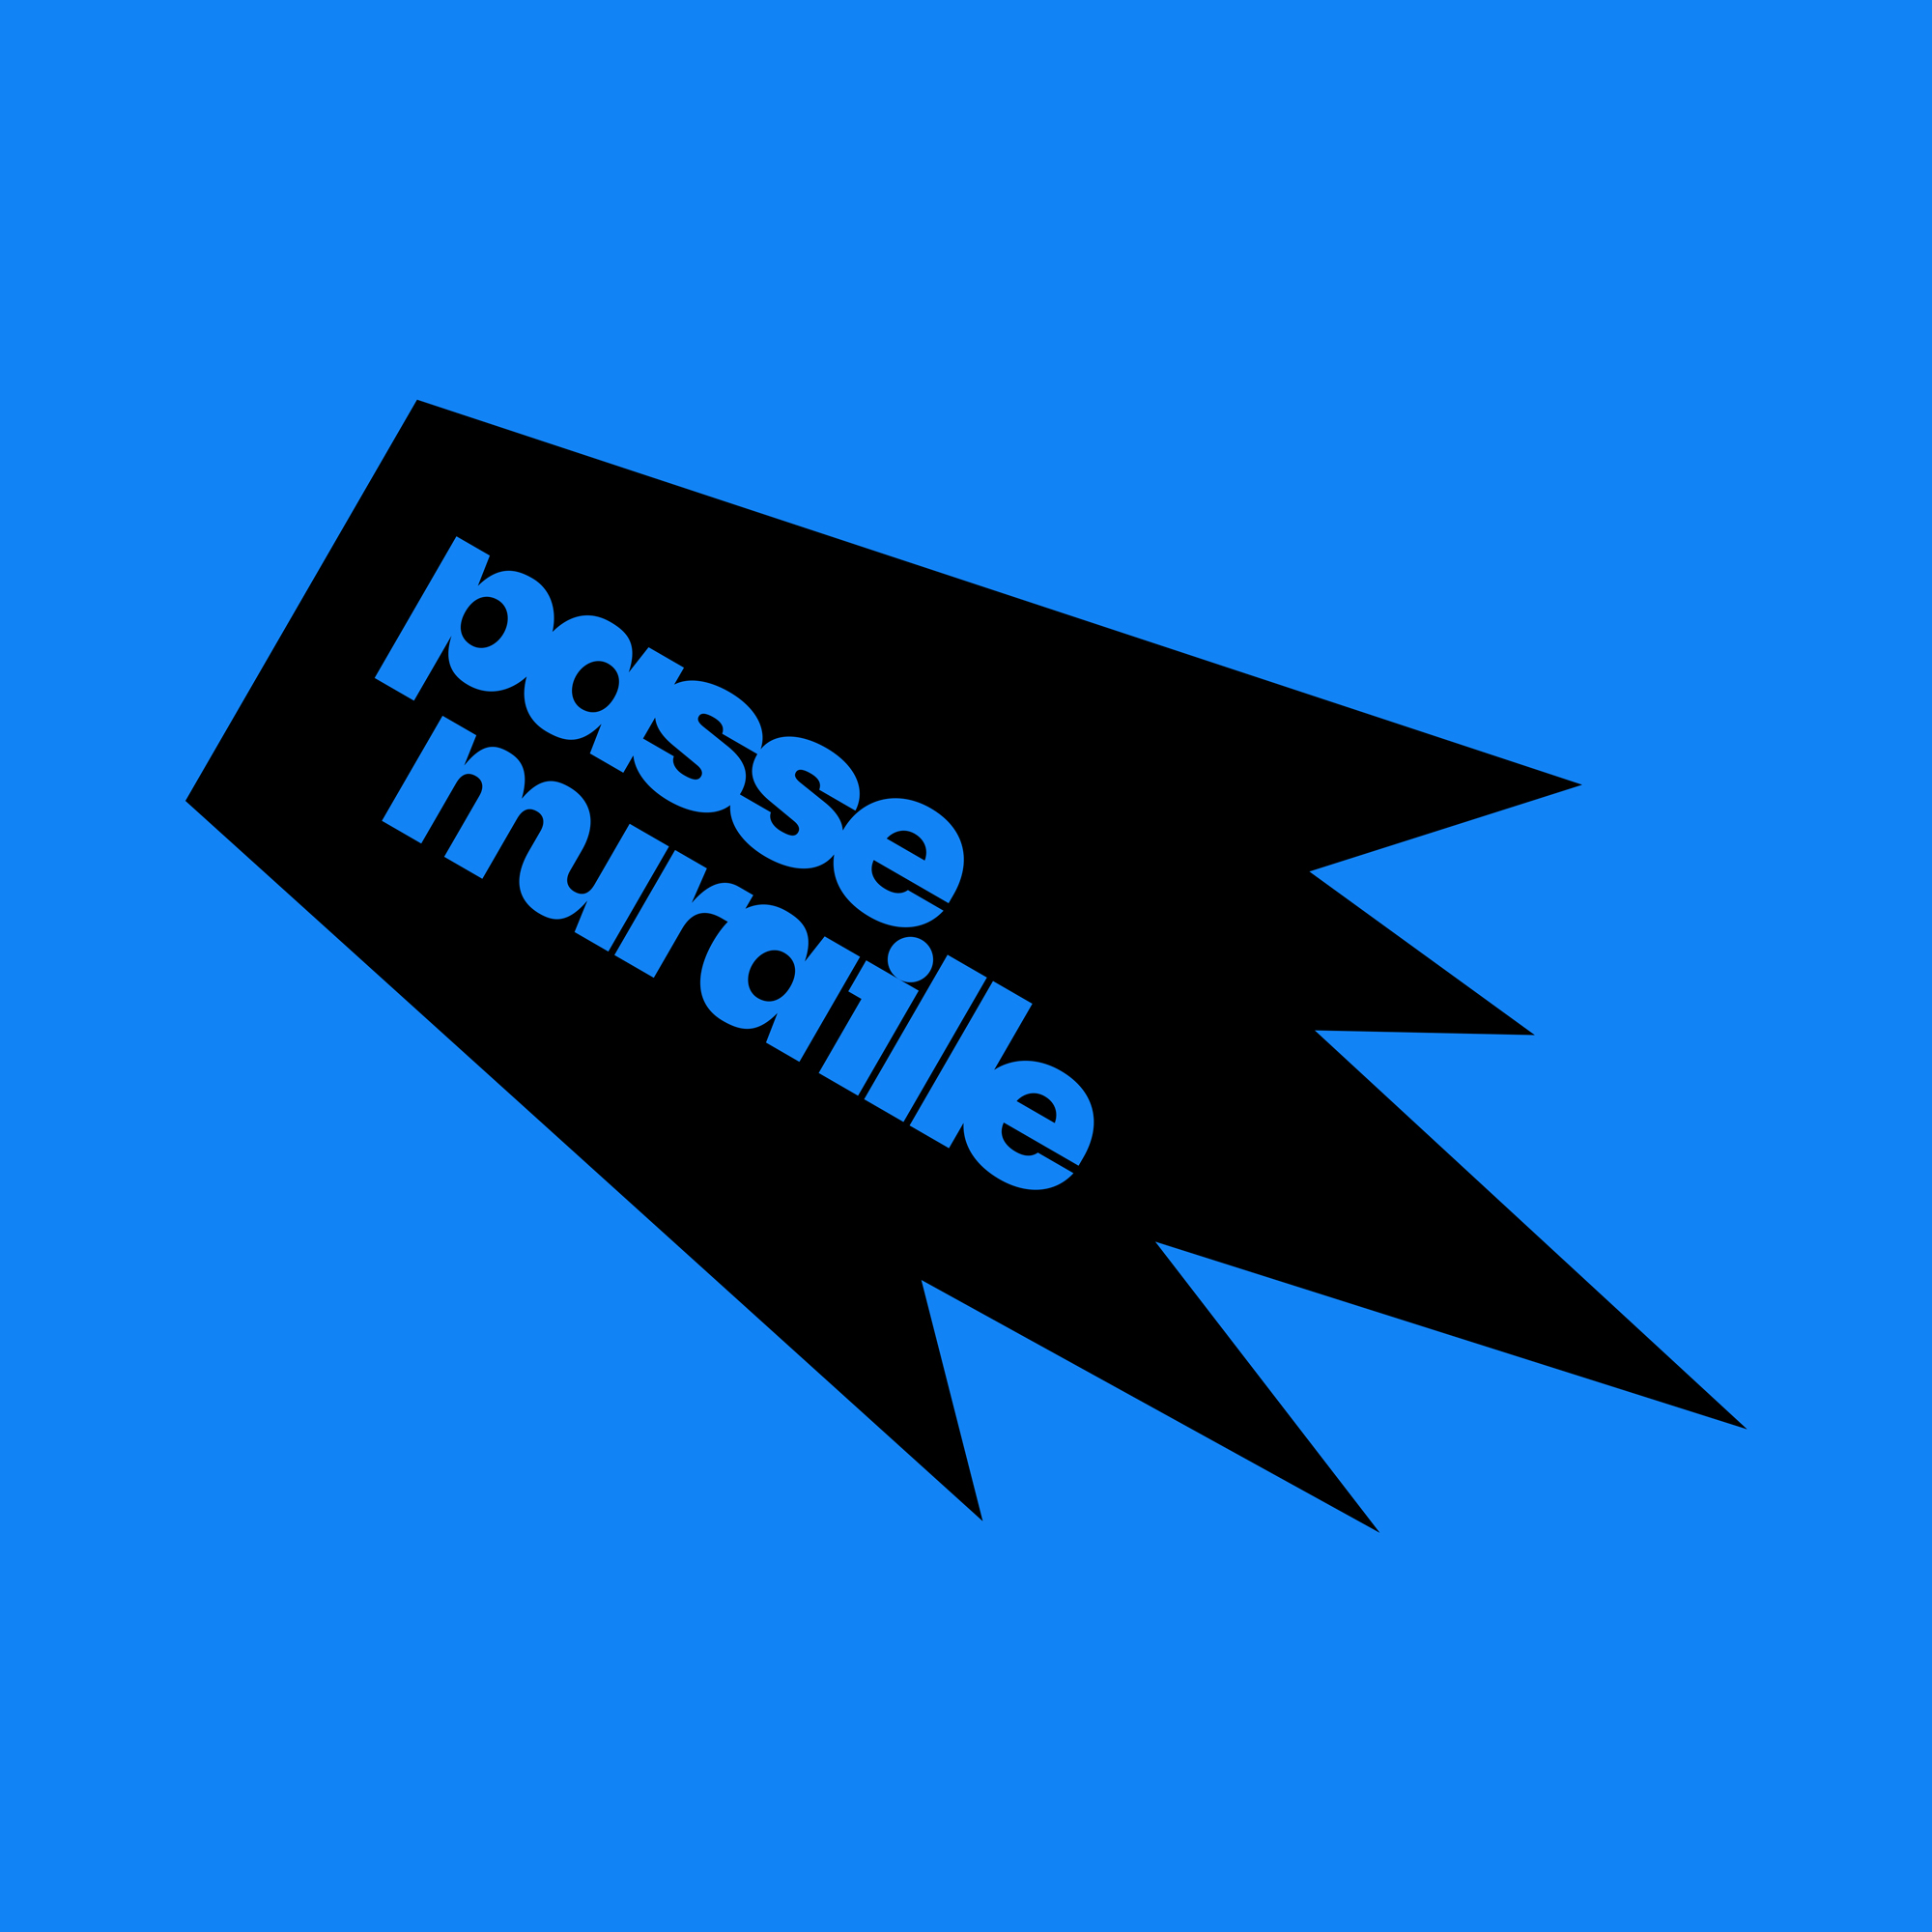 Passe Muraille Event Identity Design by Buckwild